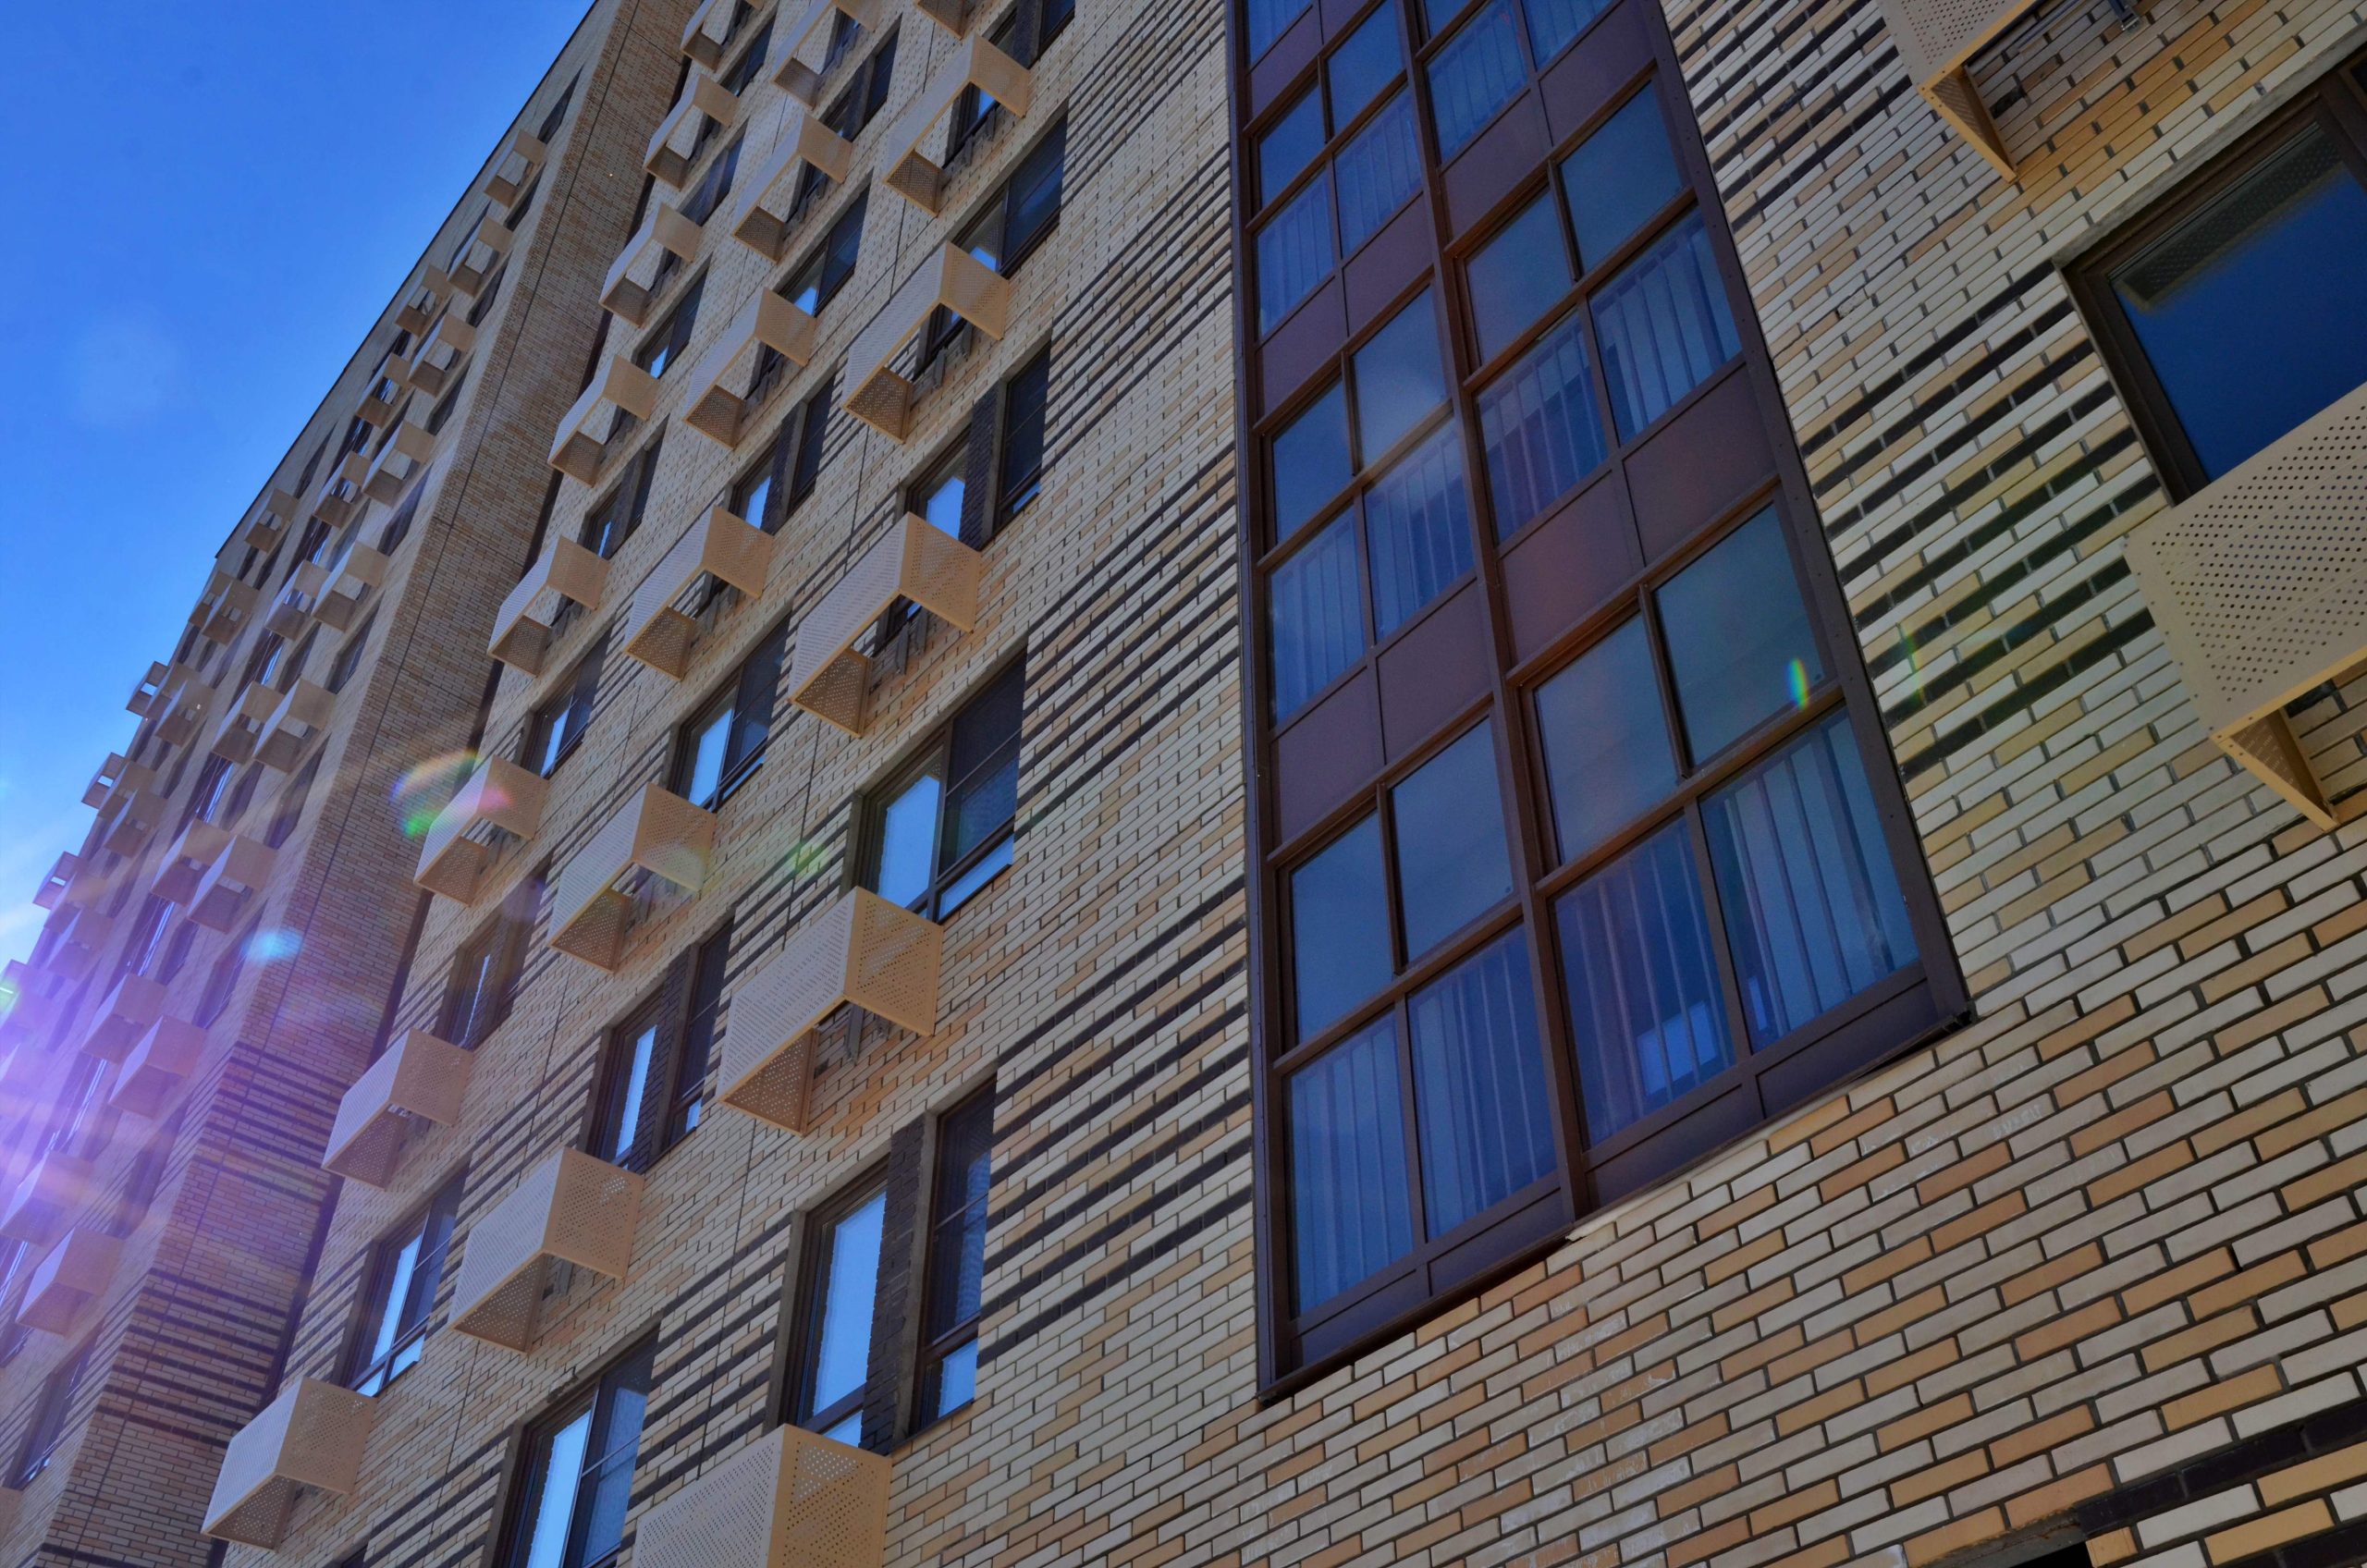 Пластичные фасады с отделкой из керамического кирпича украсят дома на Нагатинской улице